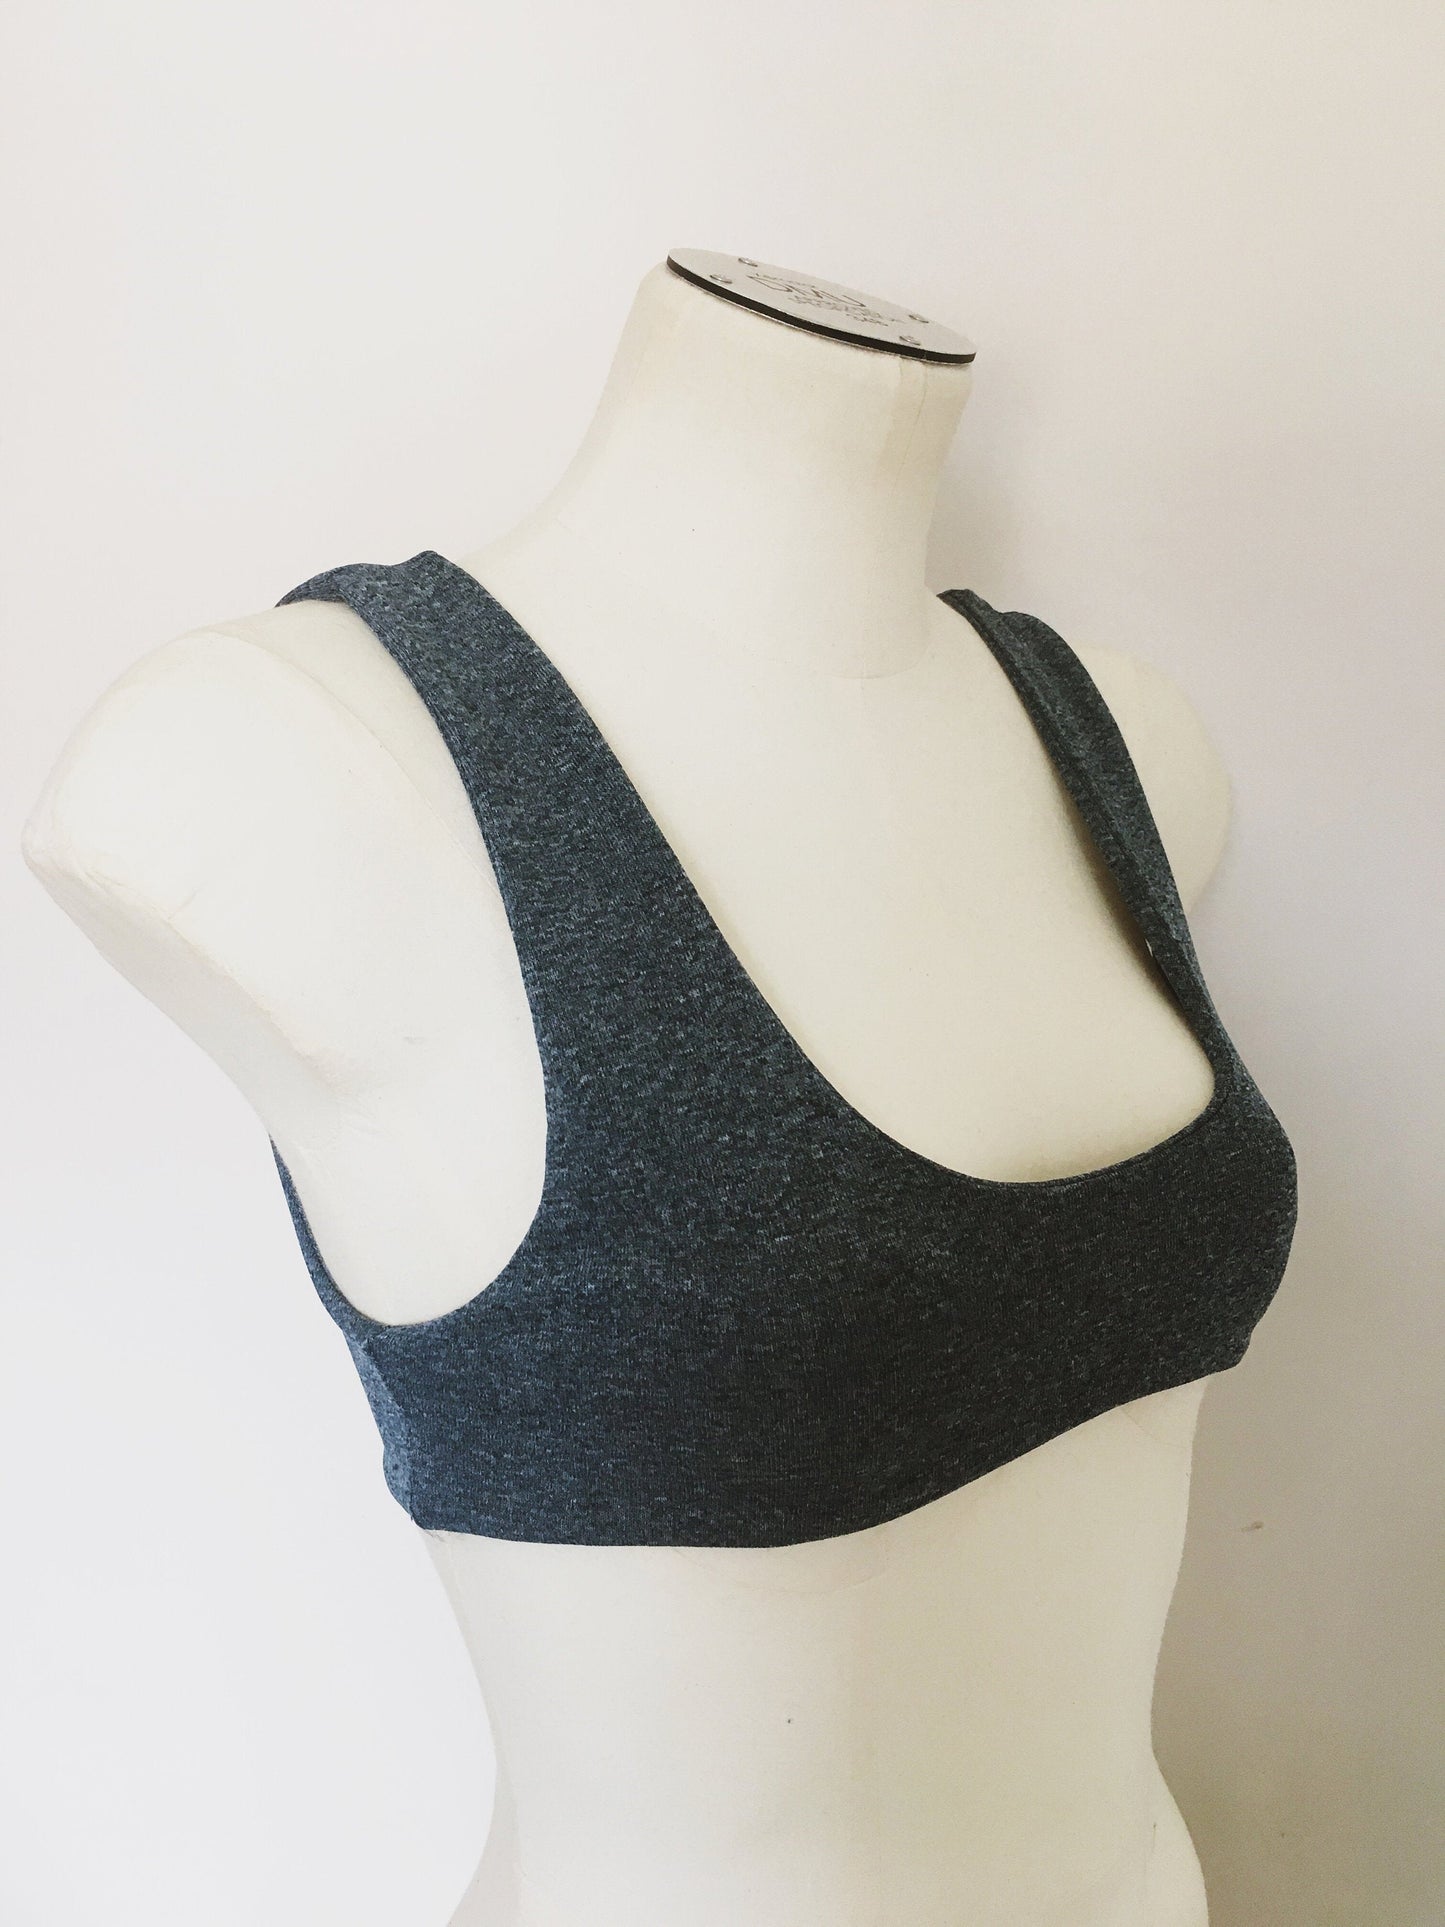 Reversible Crop top bikini | PDF Sewing Pattern sizes XXS-5XL | Chrissy